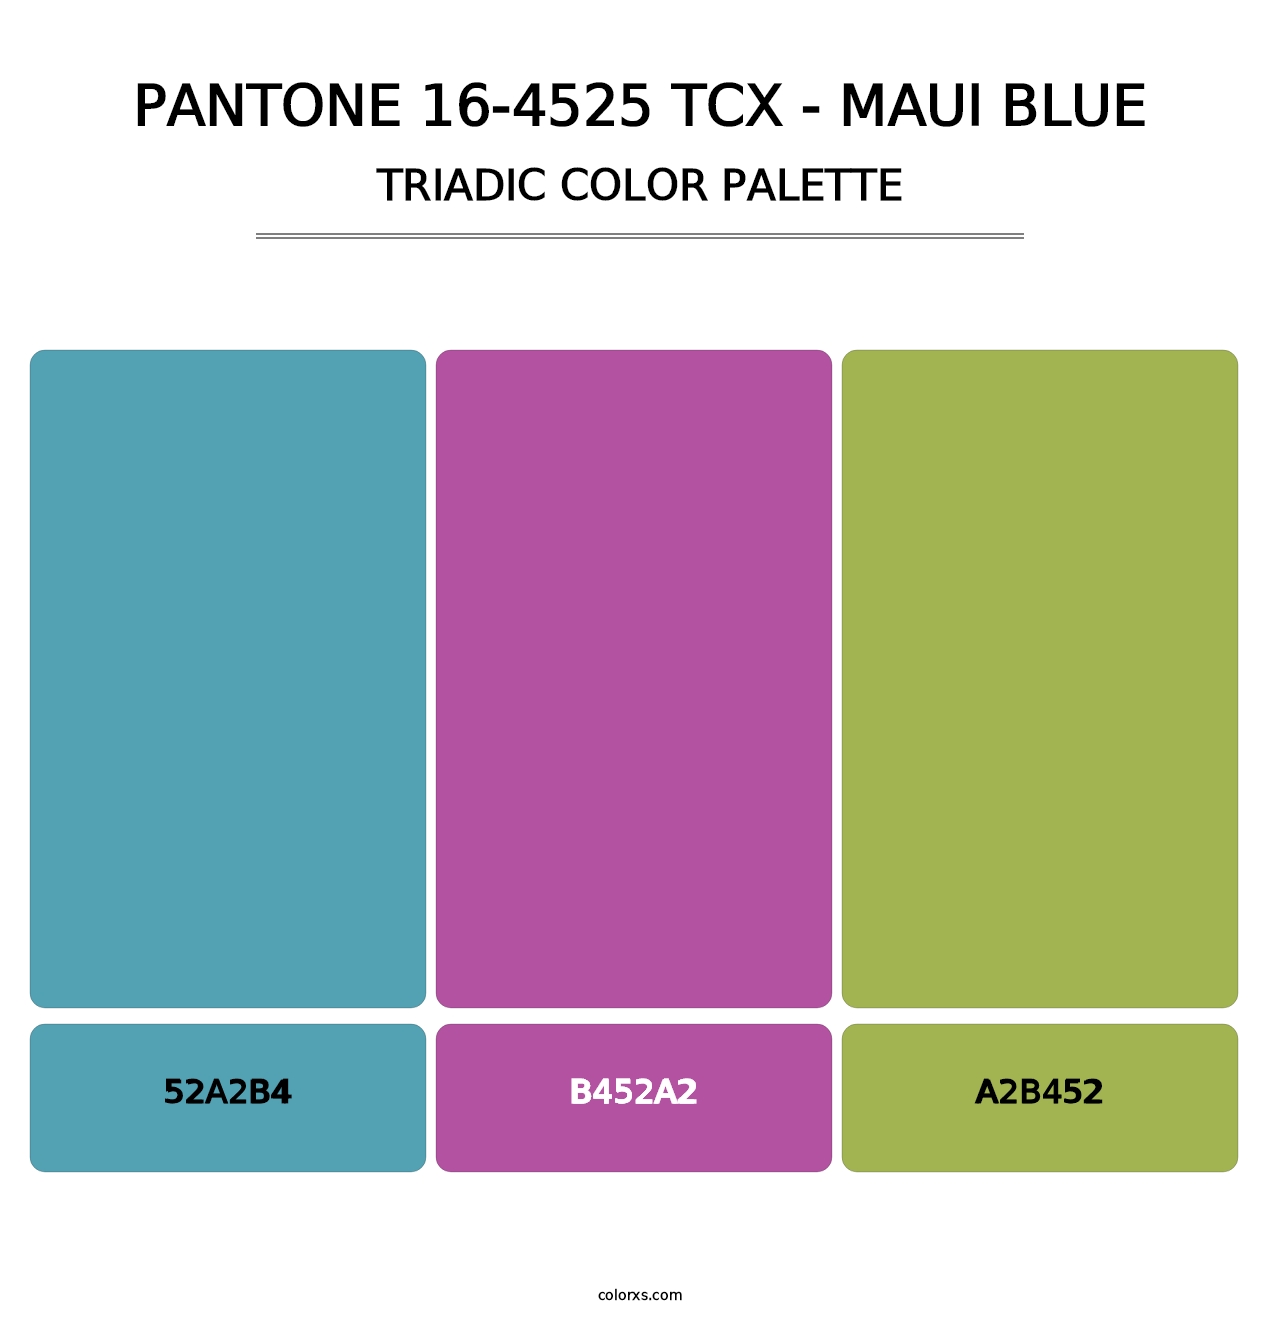 PANTONE 16-4525 TCX - Maui Blue - Triadic Color Palette